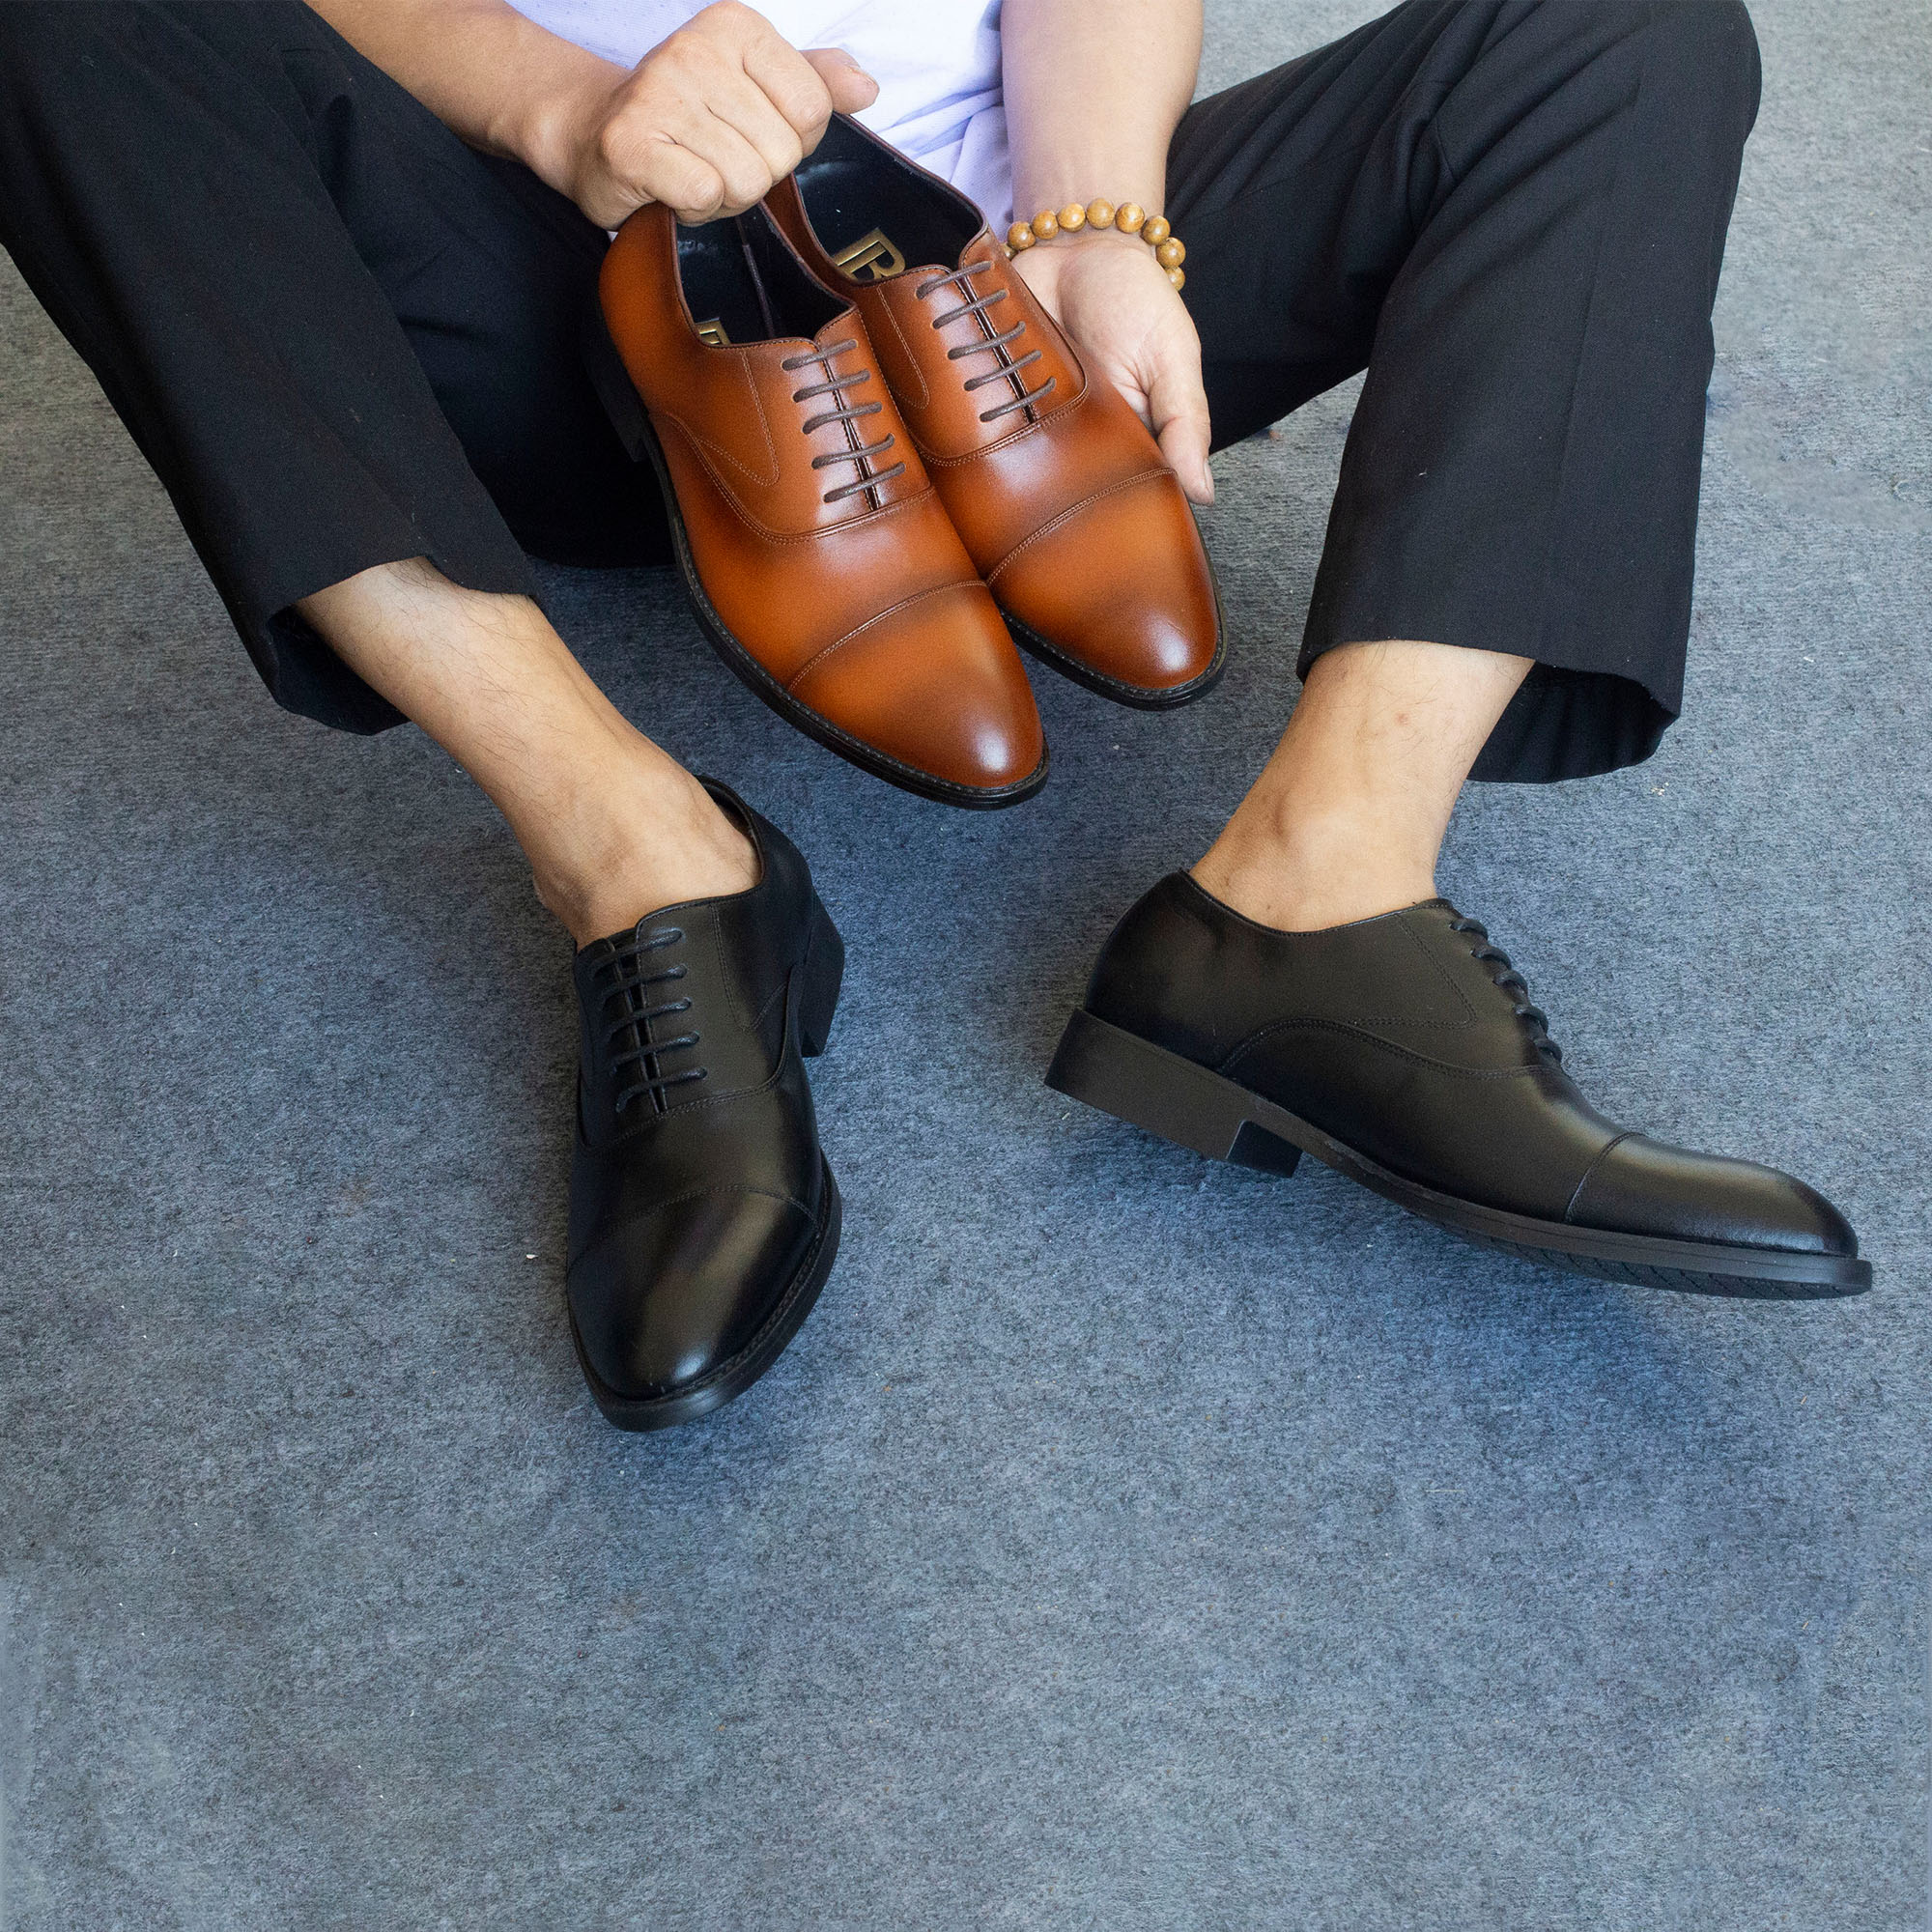 Giày da nam, giày oxford công sở Bụi Leather G105 - Da bò Nappa cao cấp